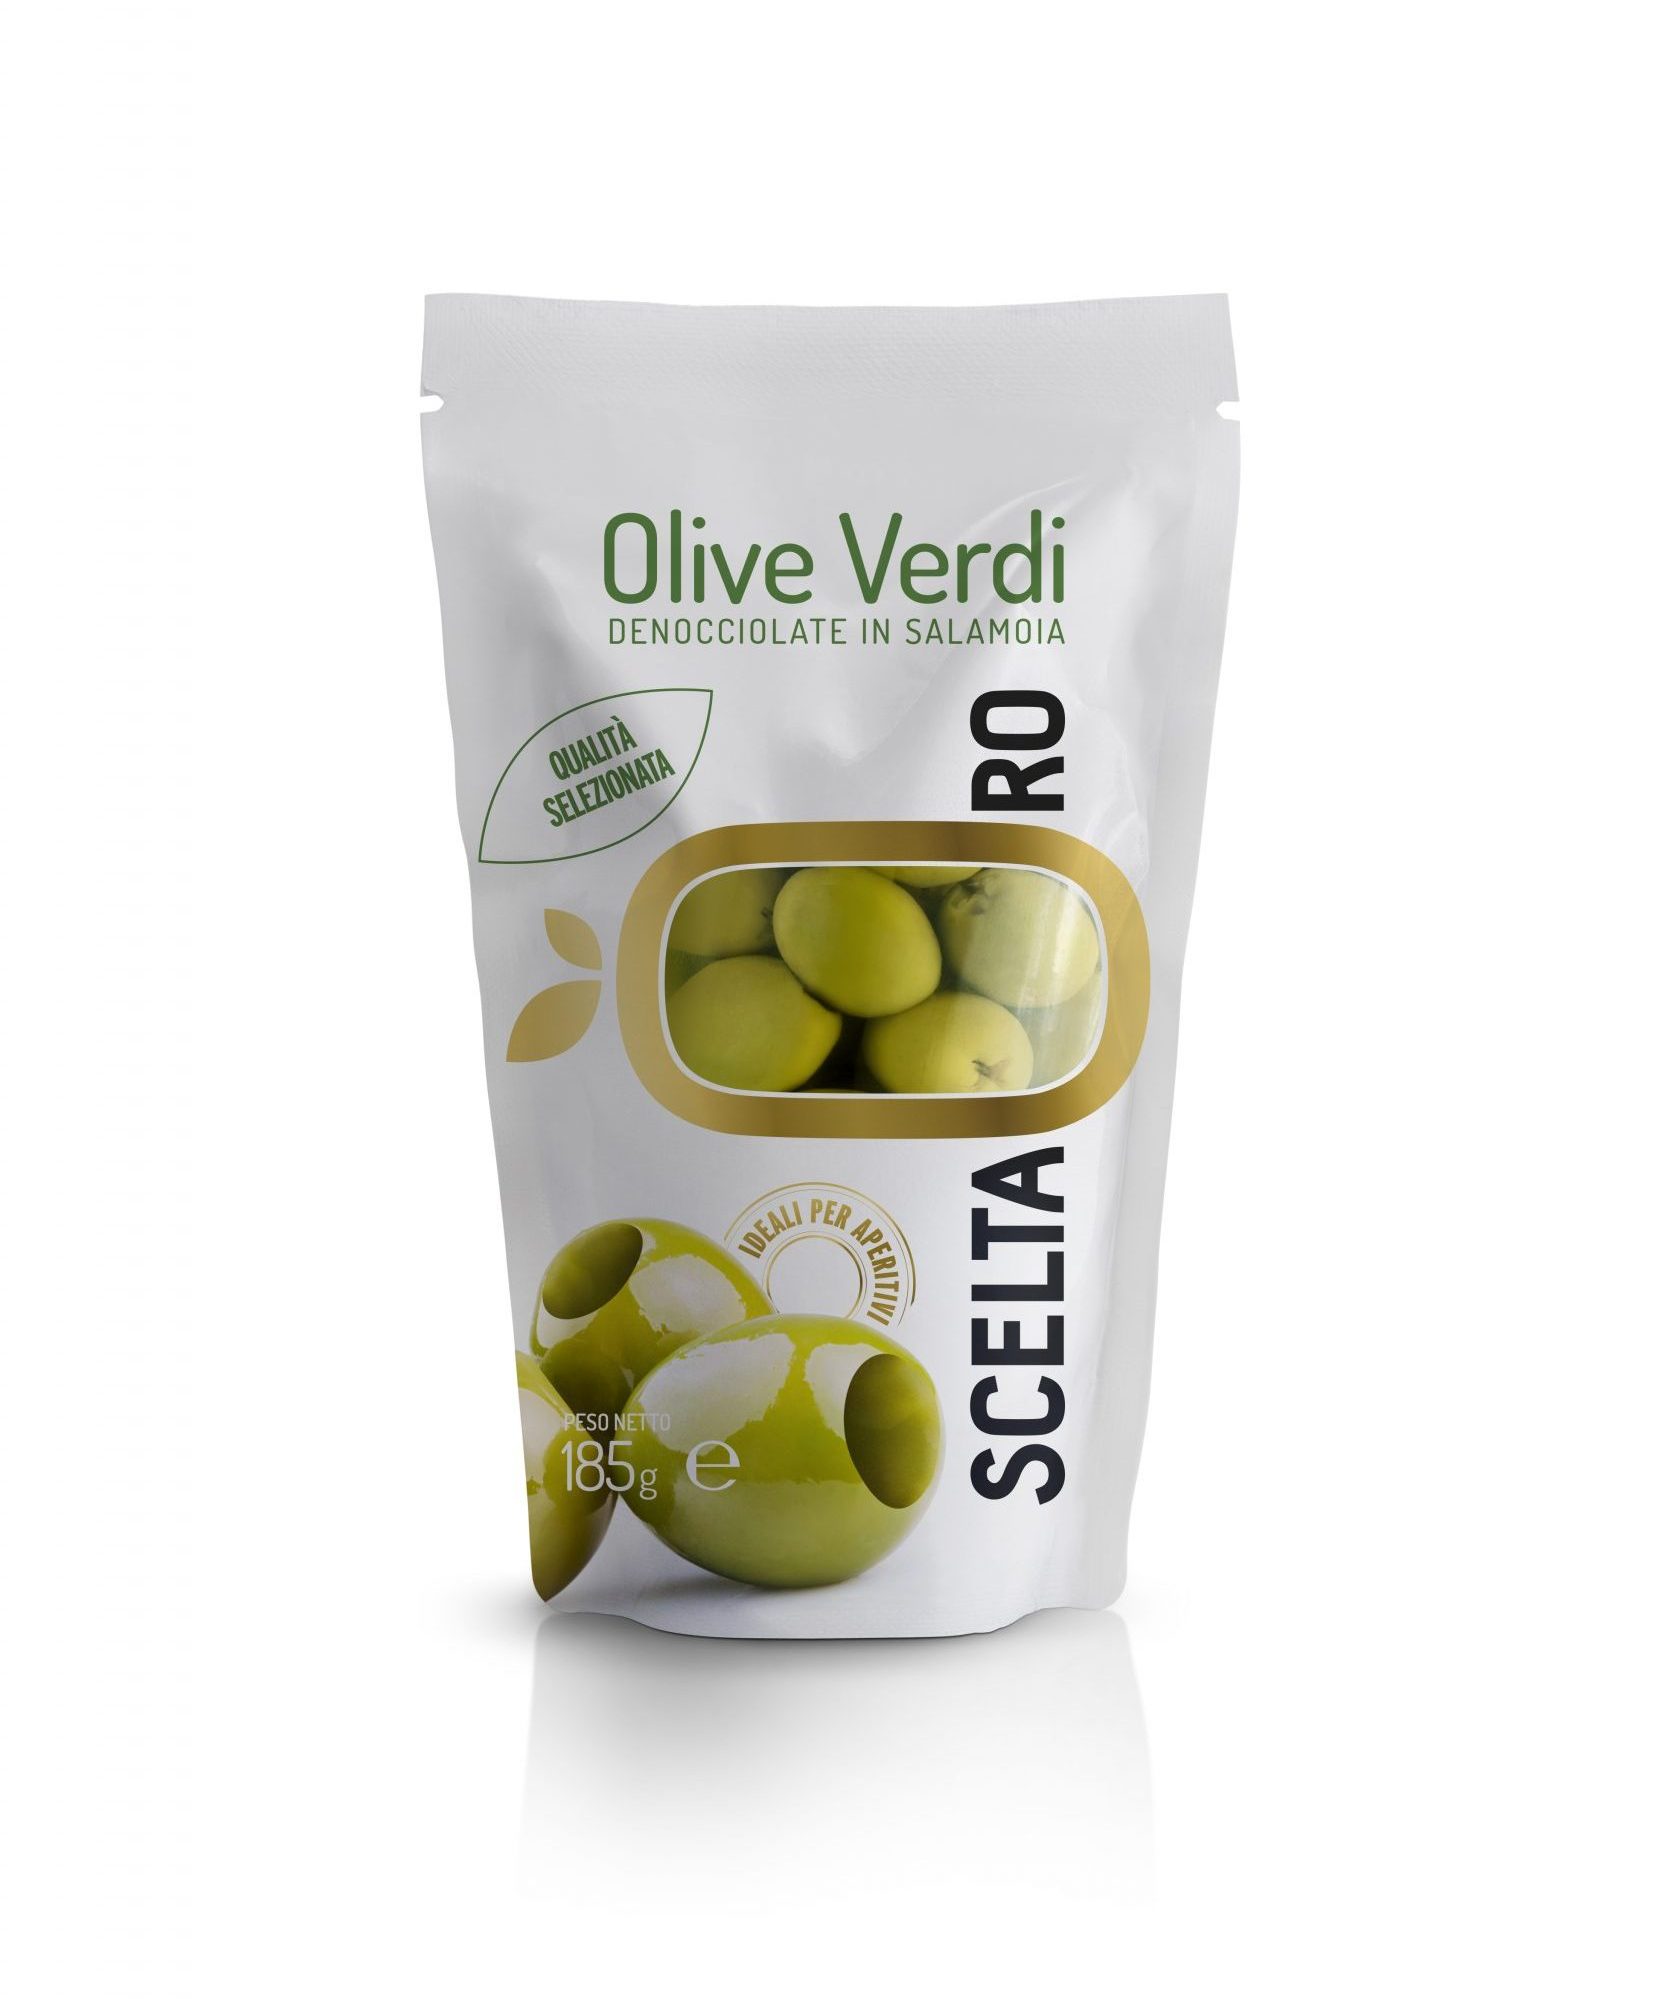 Olive Verdi denocciolate Scelta Oro